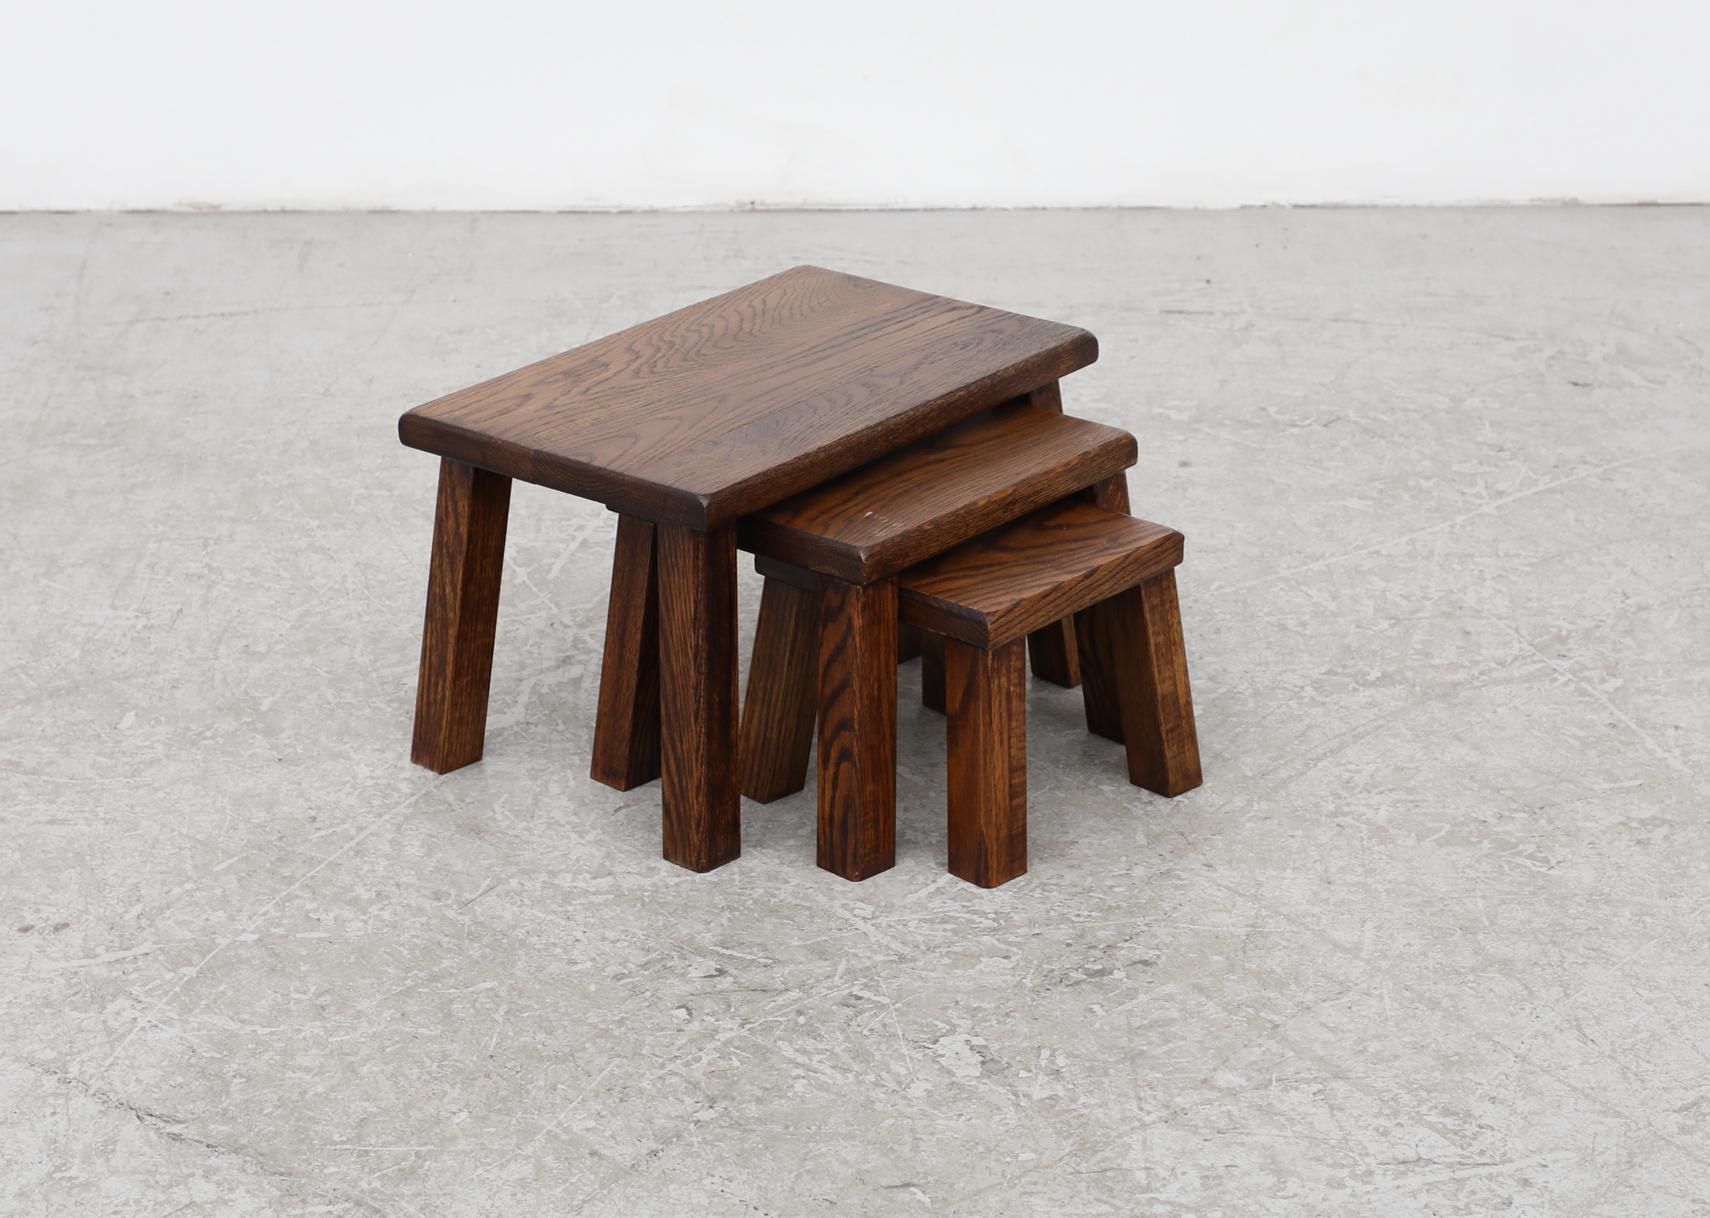 Ensemble de 3 tables gigognes Brutalist en chêne foncé avec des plateaux épais et de gros pieds angulaires carrés. En état d'origine, avec une usure visible et une patine correspondant à leur âge et à leur utilisation.